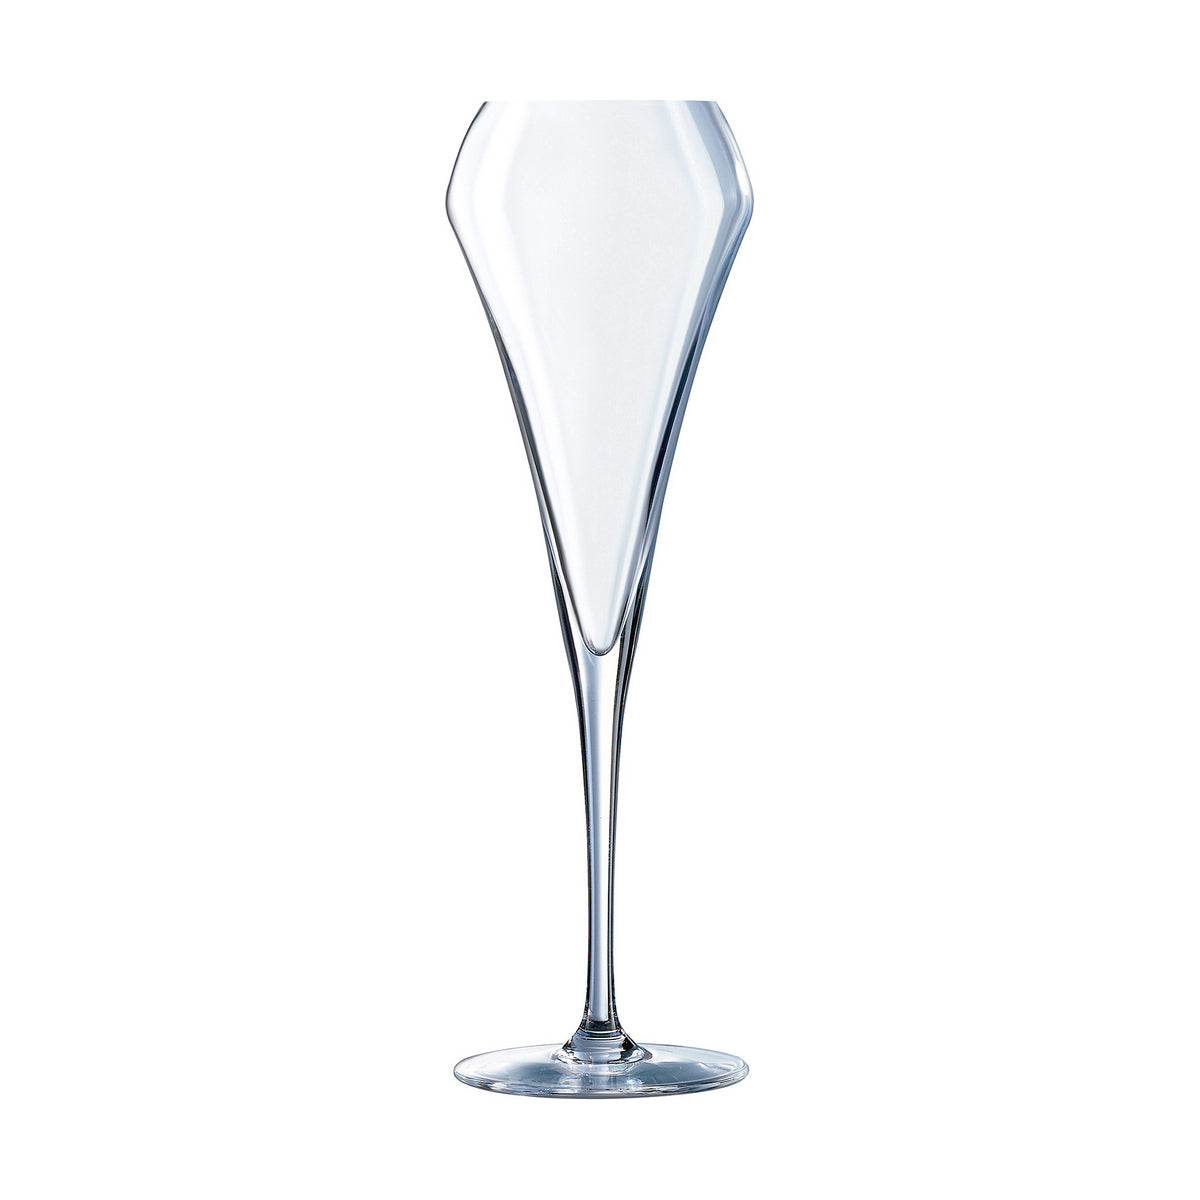 Gläsersatz Chef & Sommelier Open Up Champagner Glas (200 ml) (6 Stück)-Haus & Küche, Besteck, Geschirr und Glaswaren-C&S-Ciniskitchen